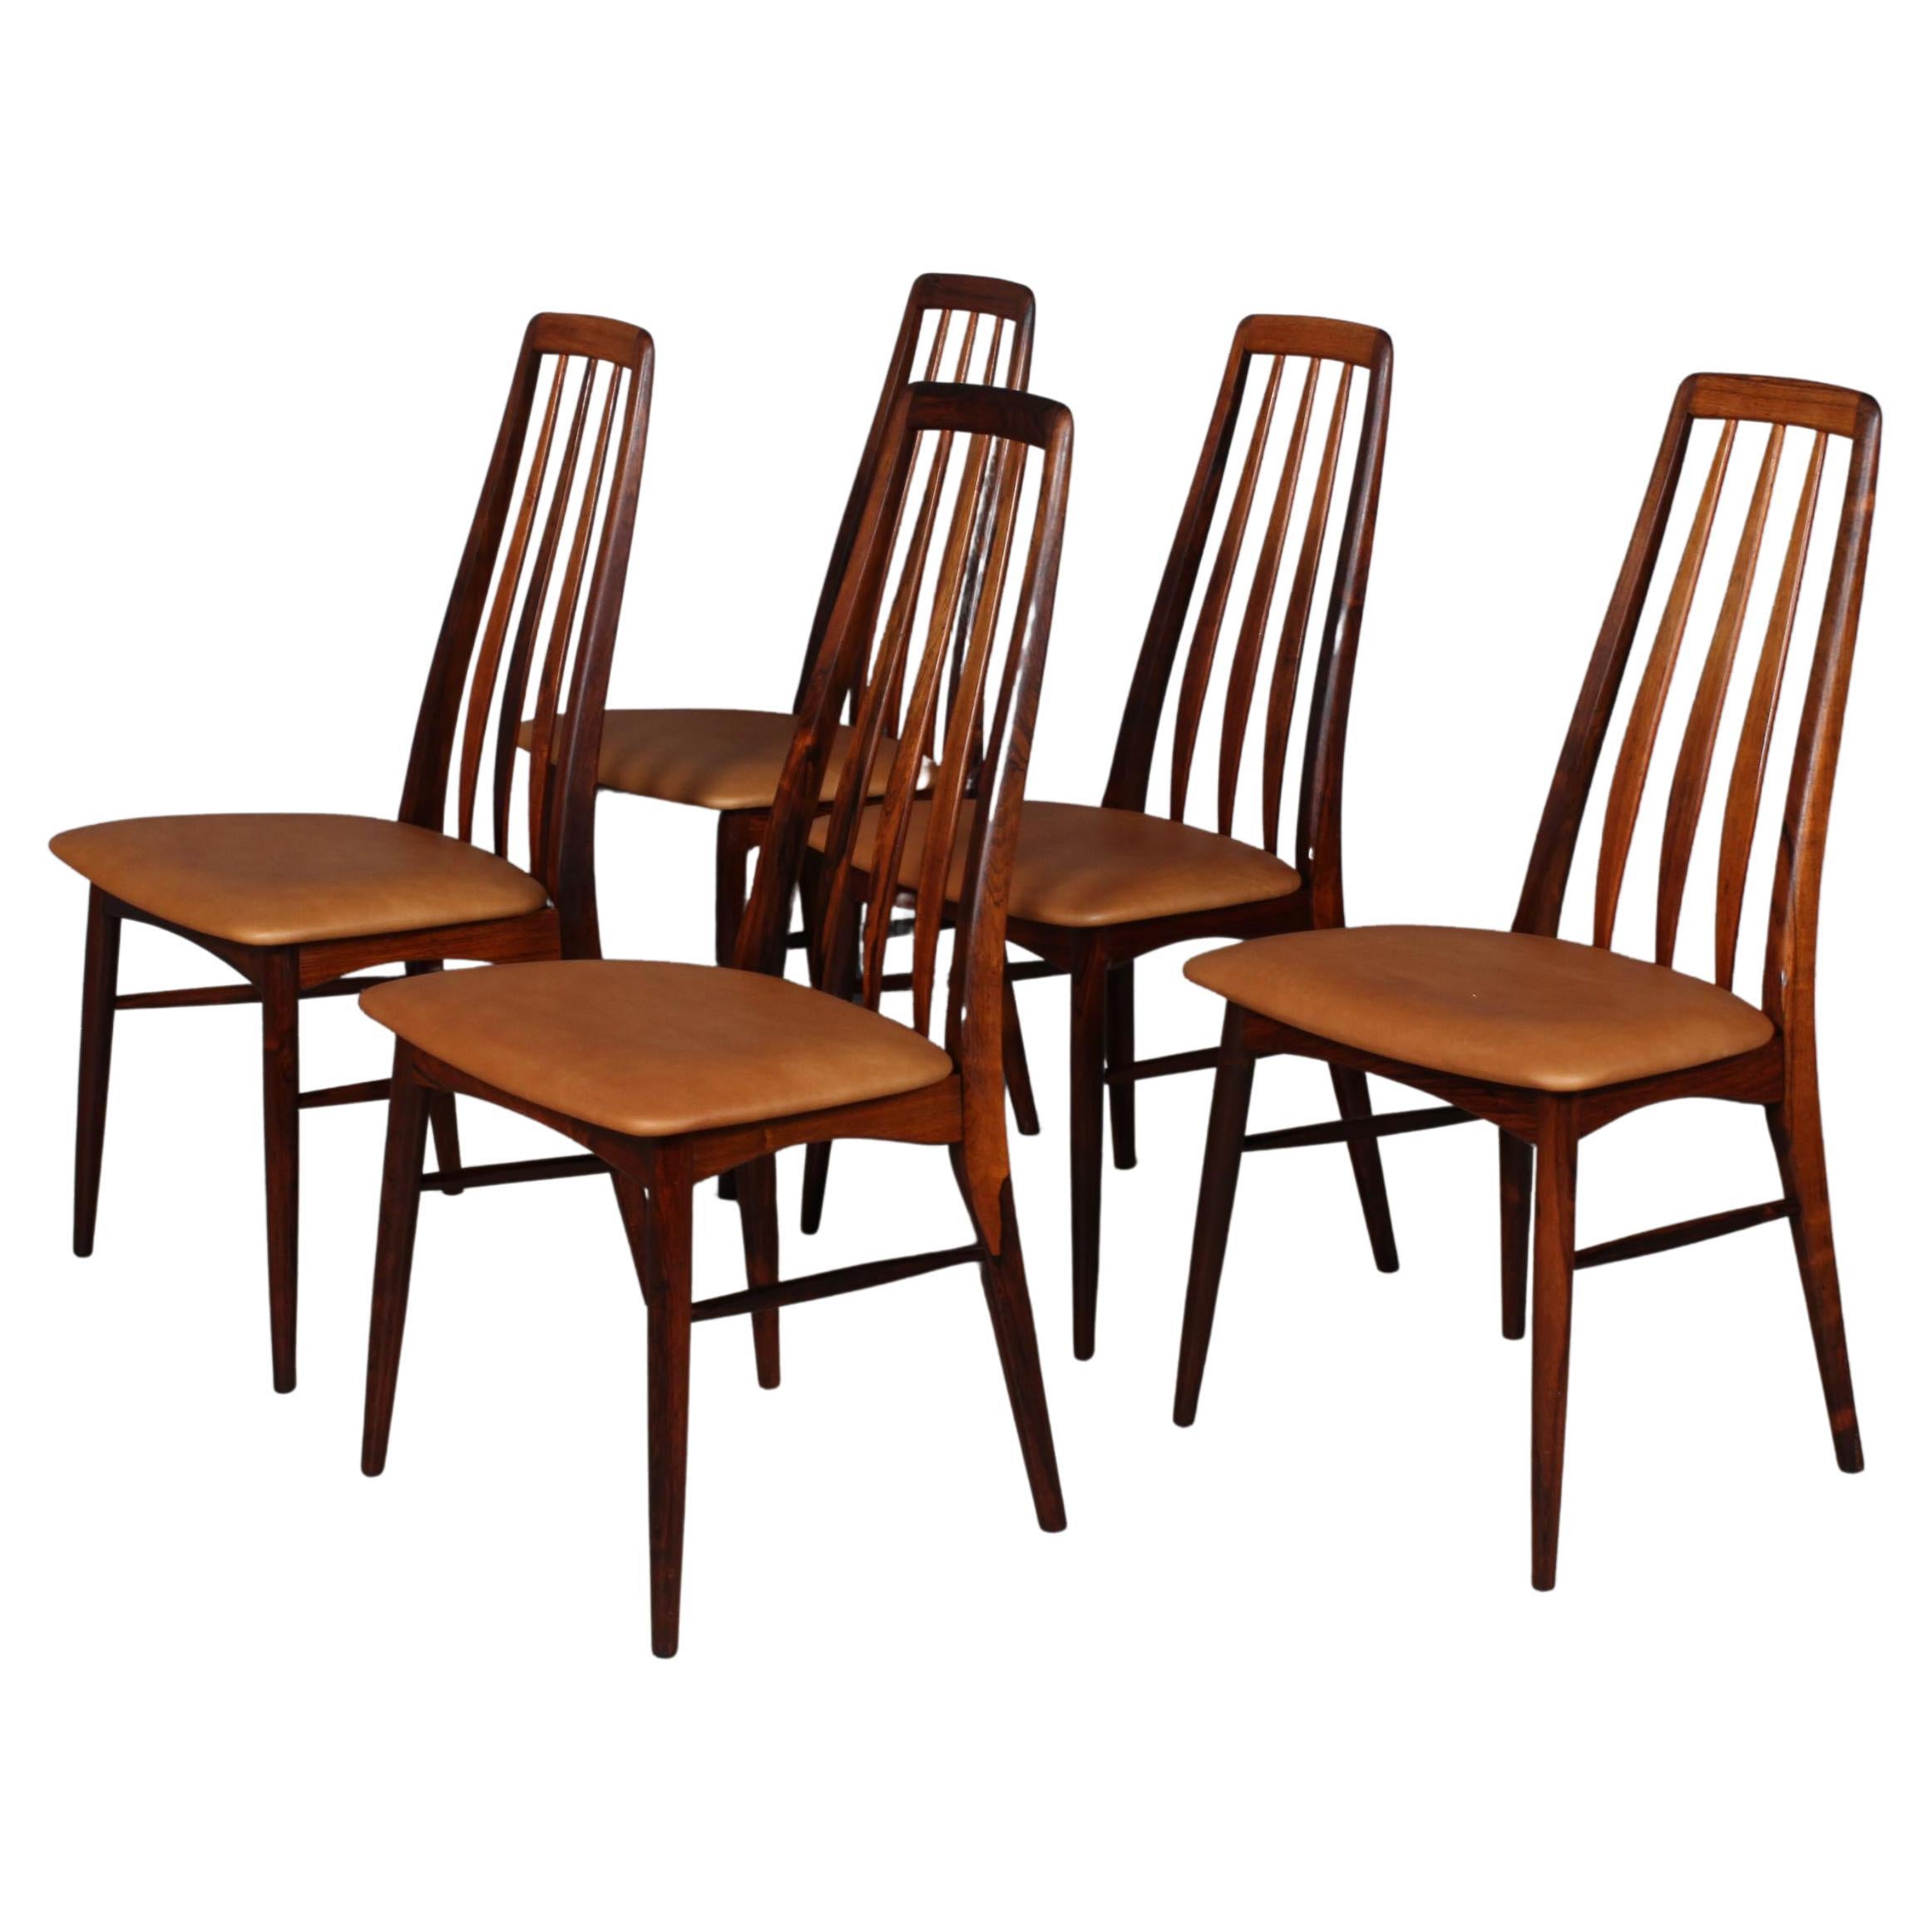 Niels Koefoed Dining Chairs, Model "Eva", Rosewood, 1960s